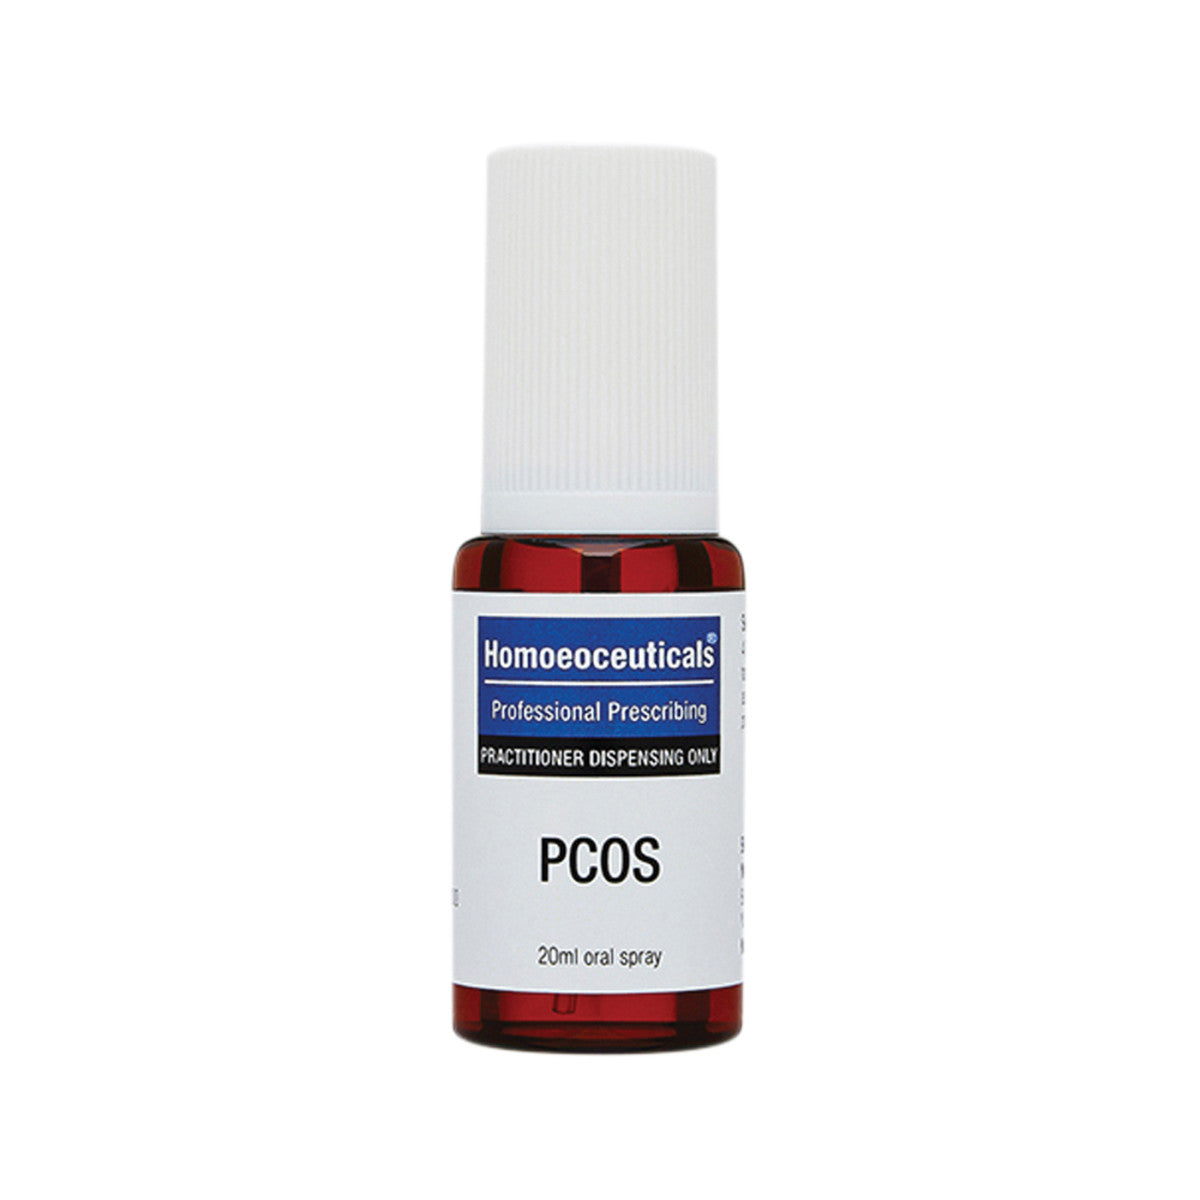 Homoeoceuticals - PCOS Spray